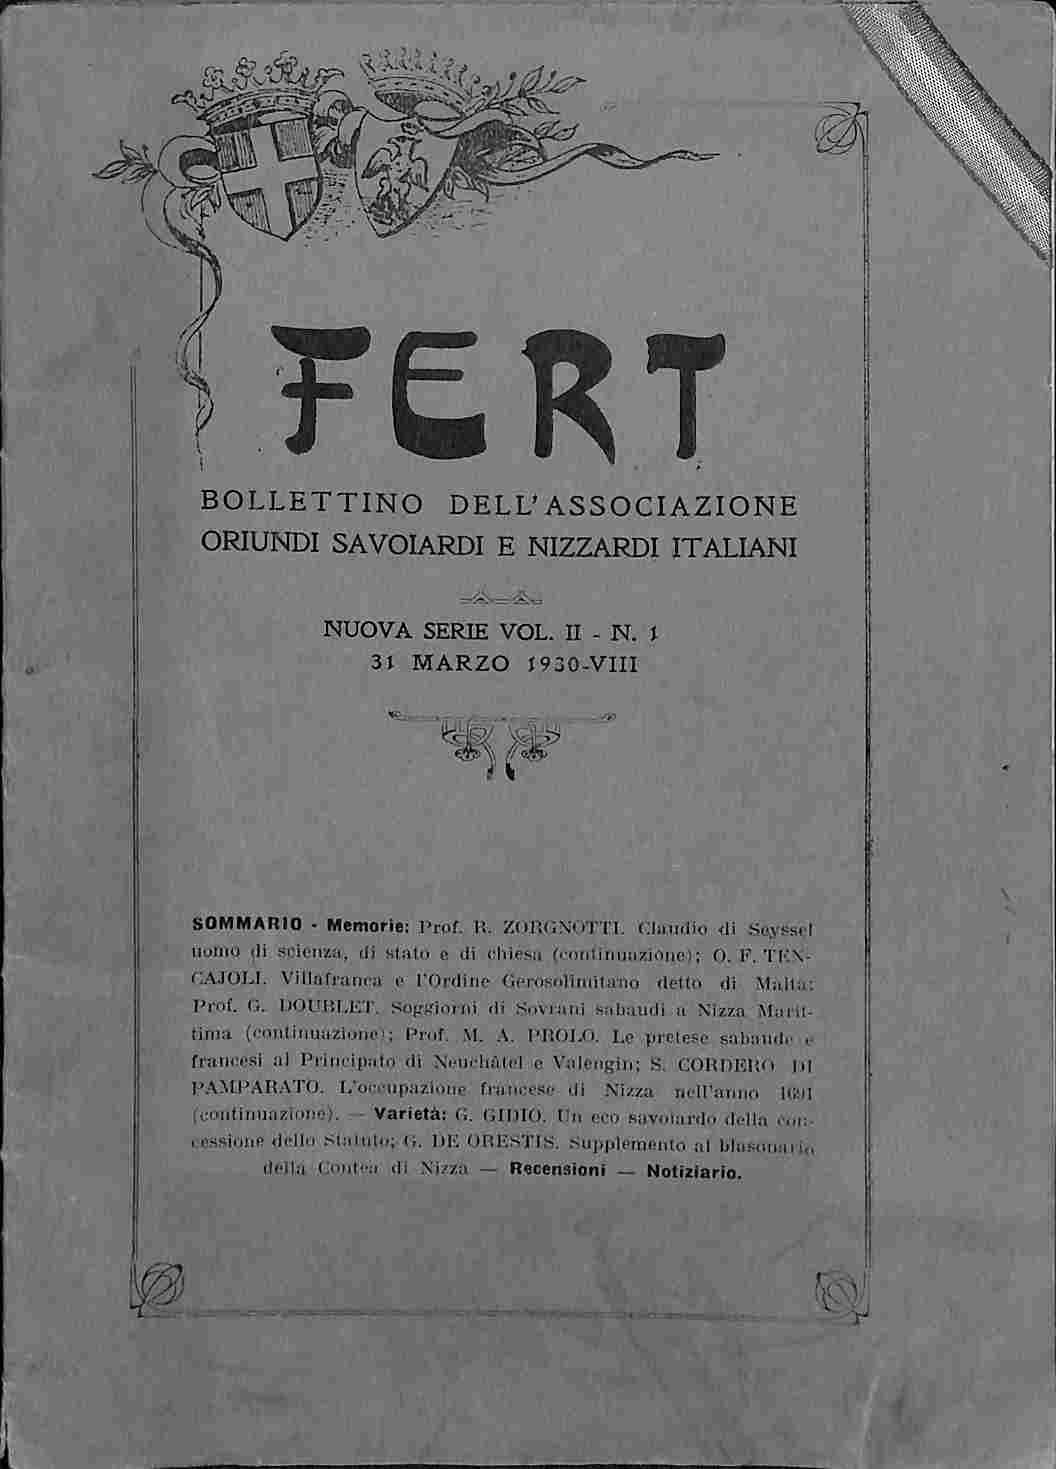 Fert. Bollettino dell'Associazione oriundi Savoiardi e Nizzardi italiani, vol. II, n. 1, 31 marzo 1930